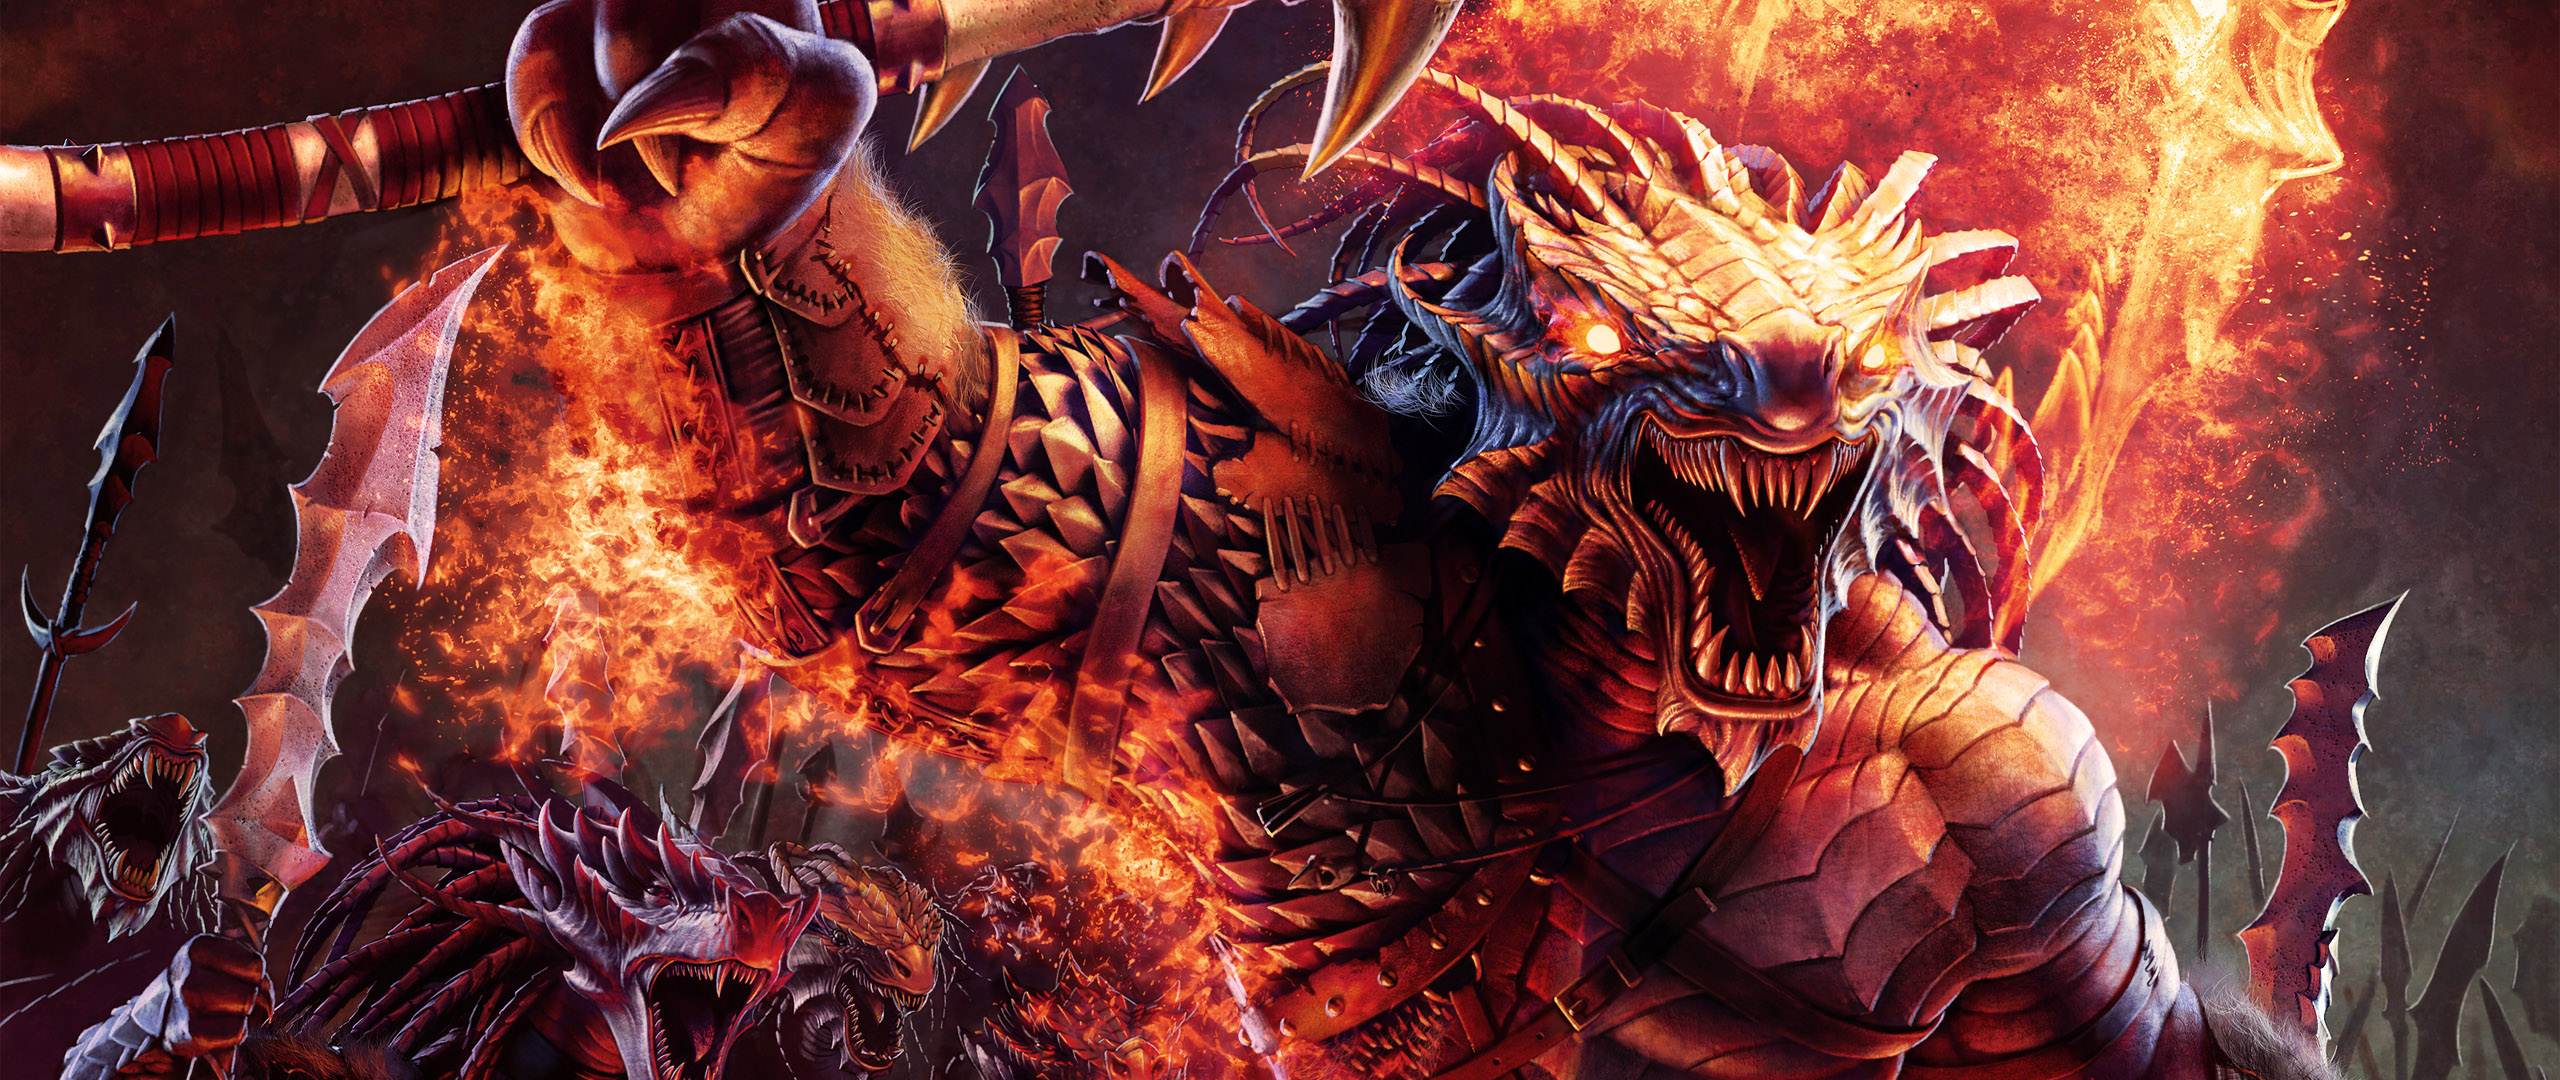 Download Wallpaper fire sword dragon, 2560x Dragonborn Barbarians